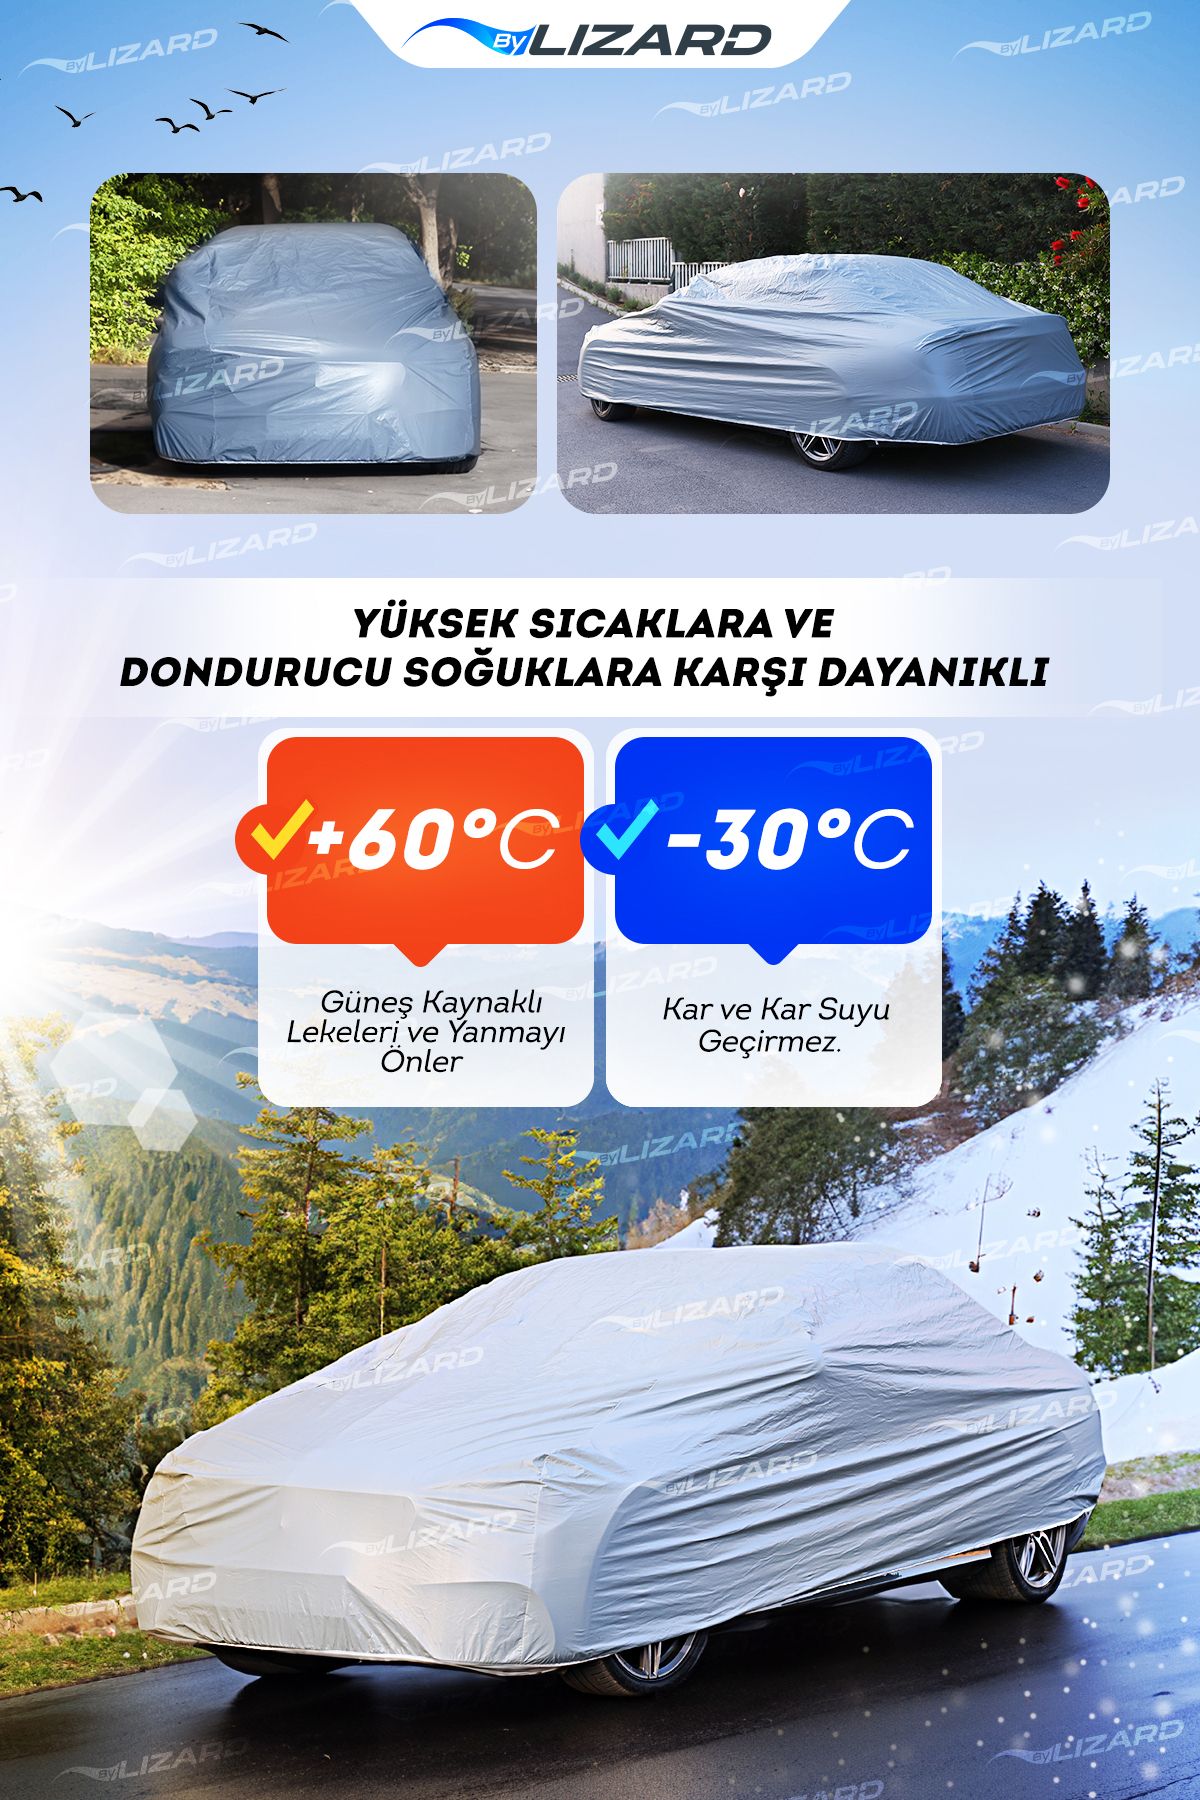 ByLizard Skoda Karoq Car Brand - Car Cover - Cover - Trendyol